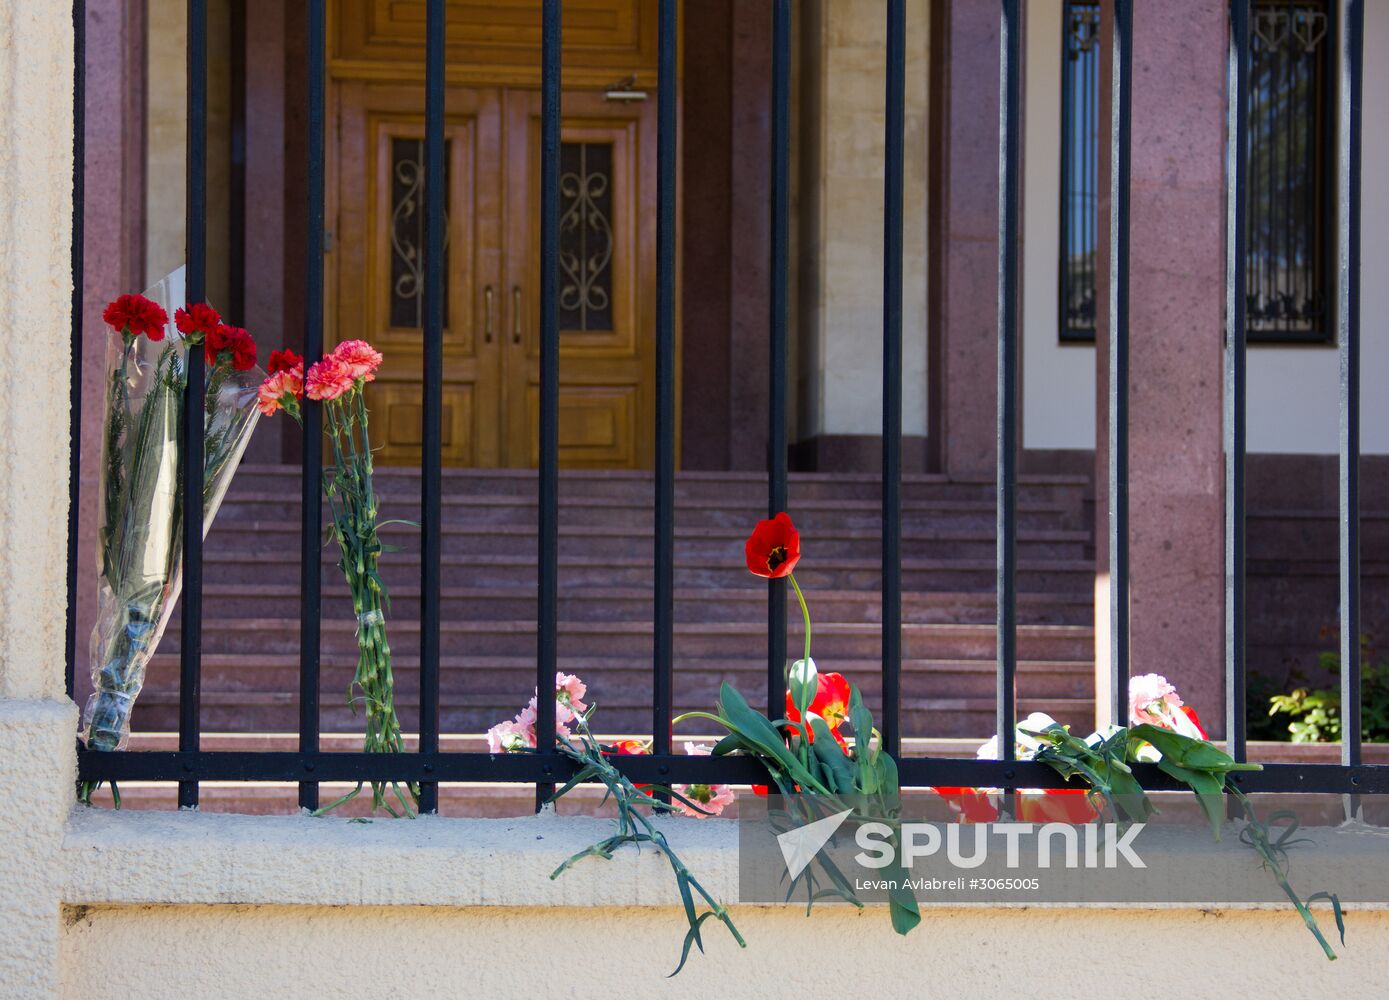 Flowers at Russian Embassies in memory of St. Petersburg metro blast victims